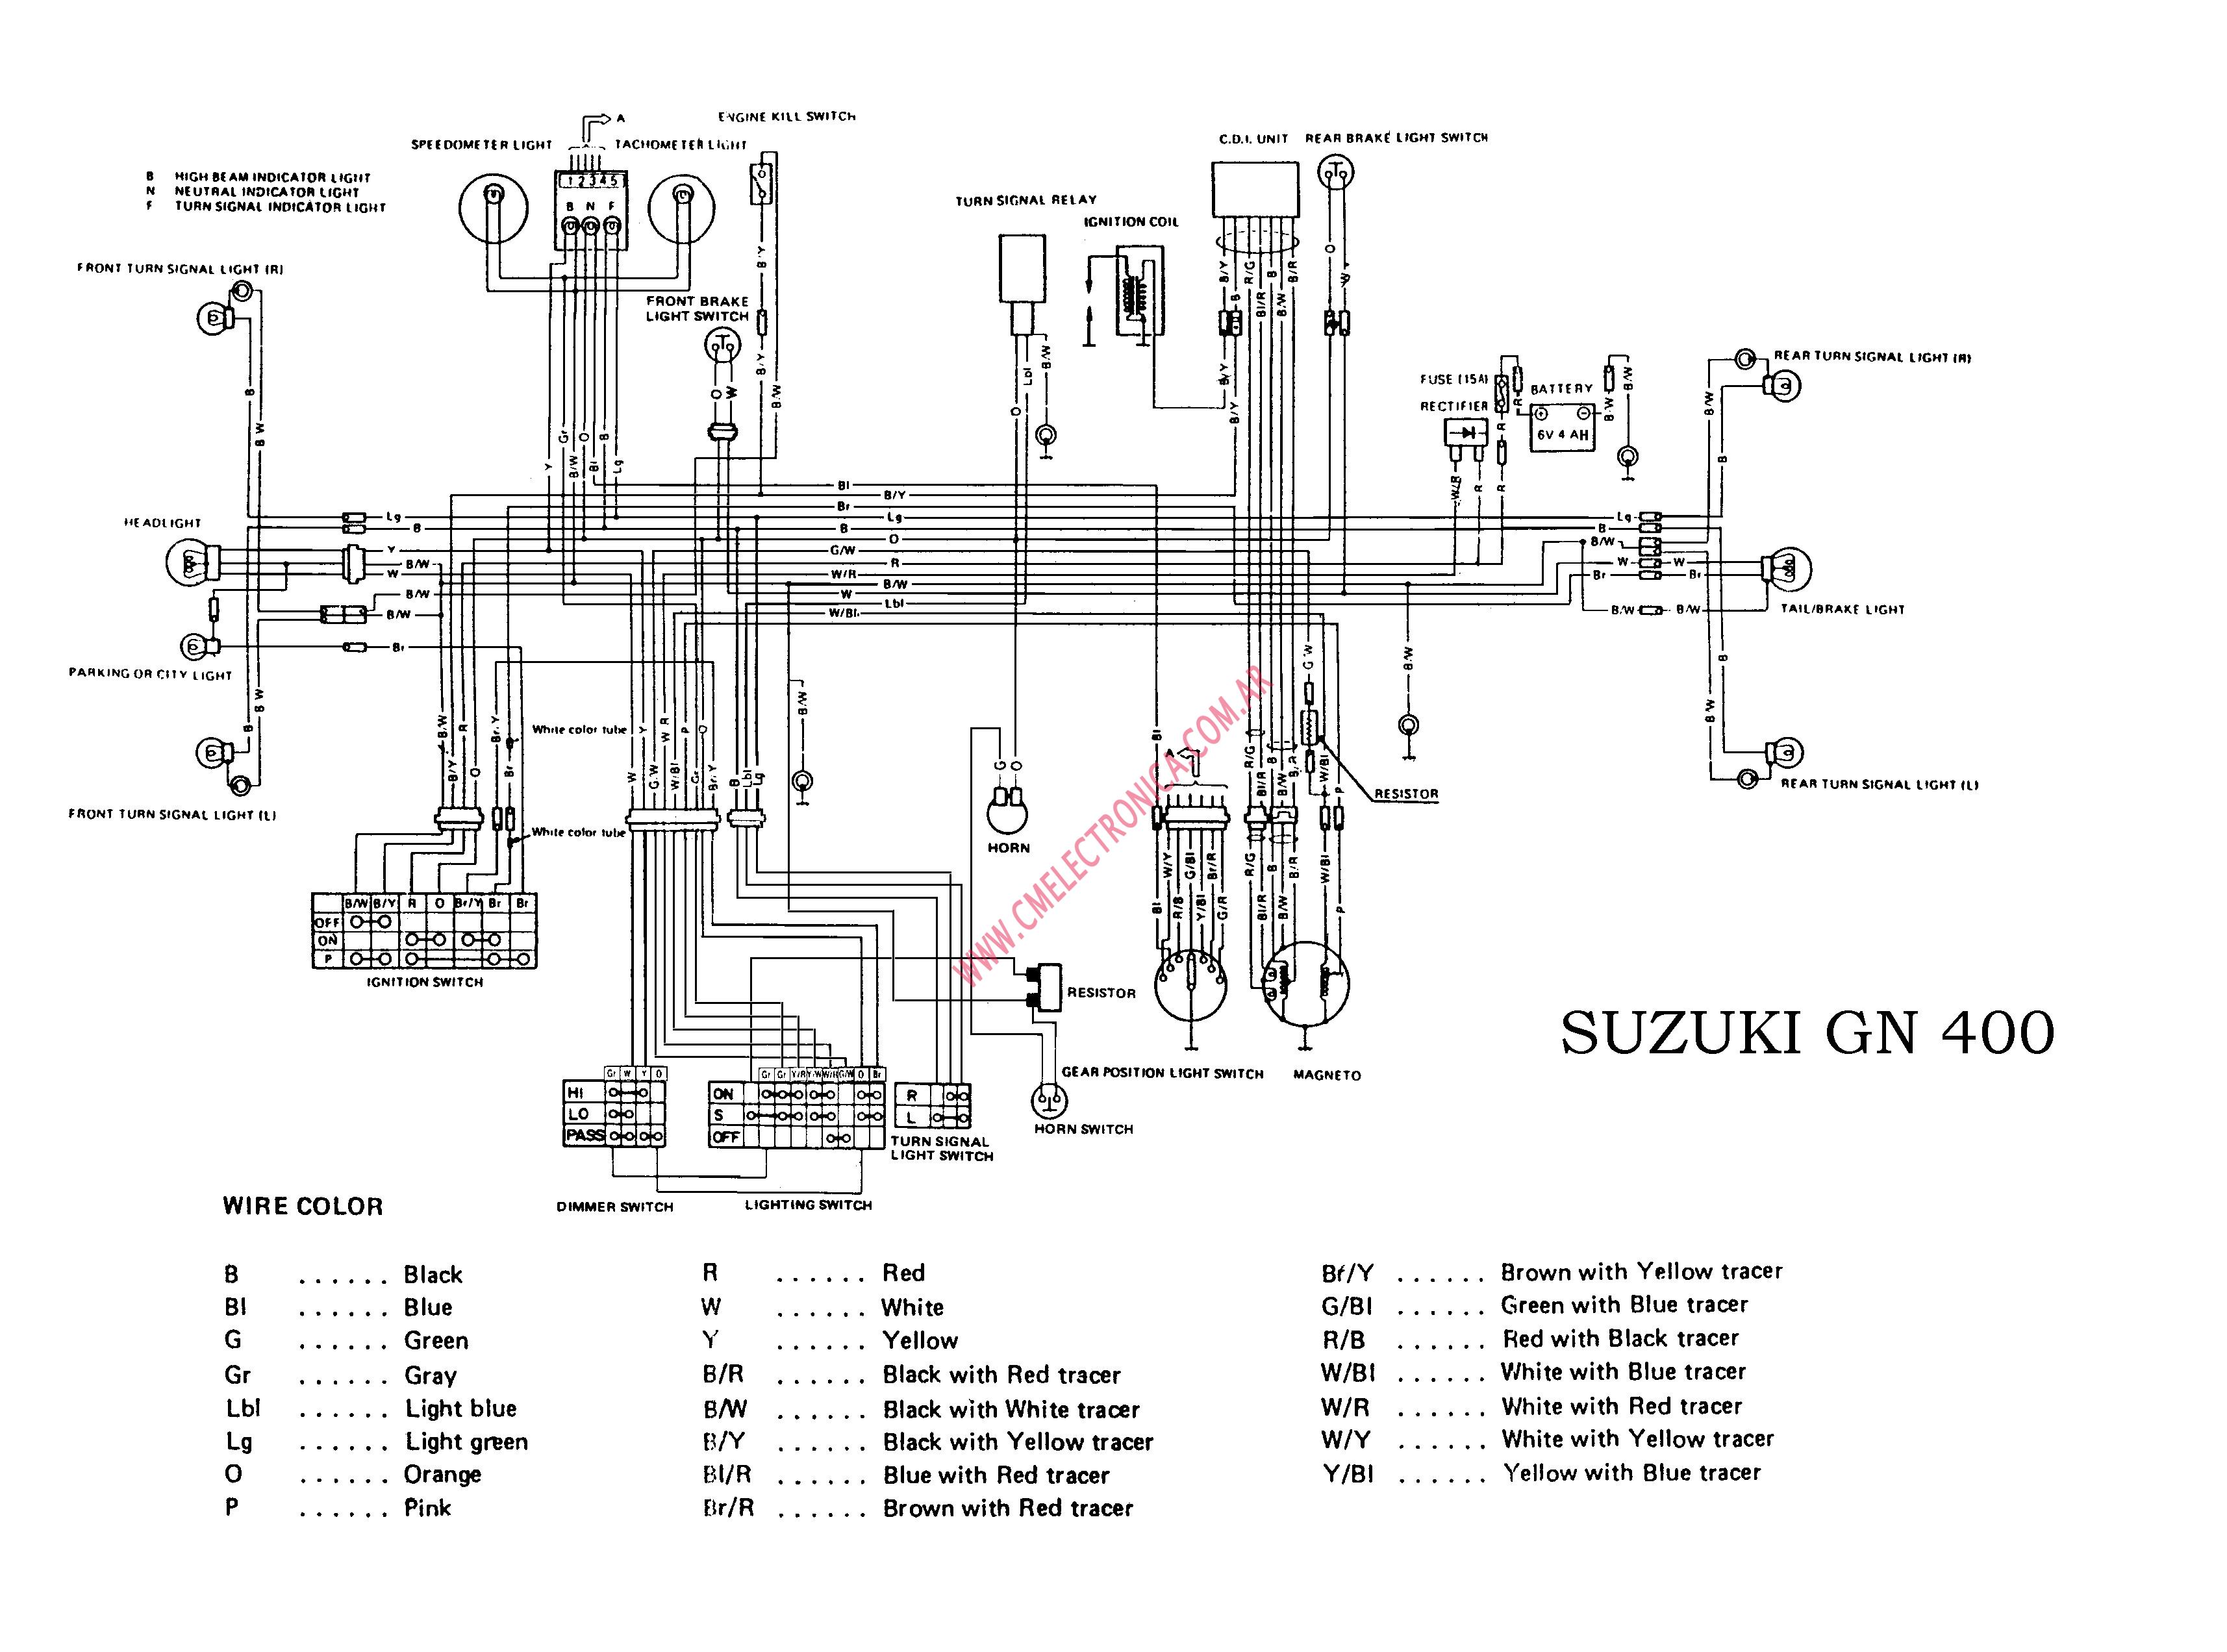 2003 Suzuki Ltz 400 Wiring Diagram from www.cmelectronica.com.ar